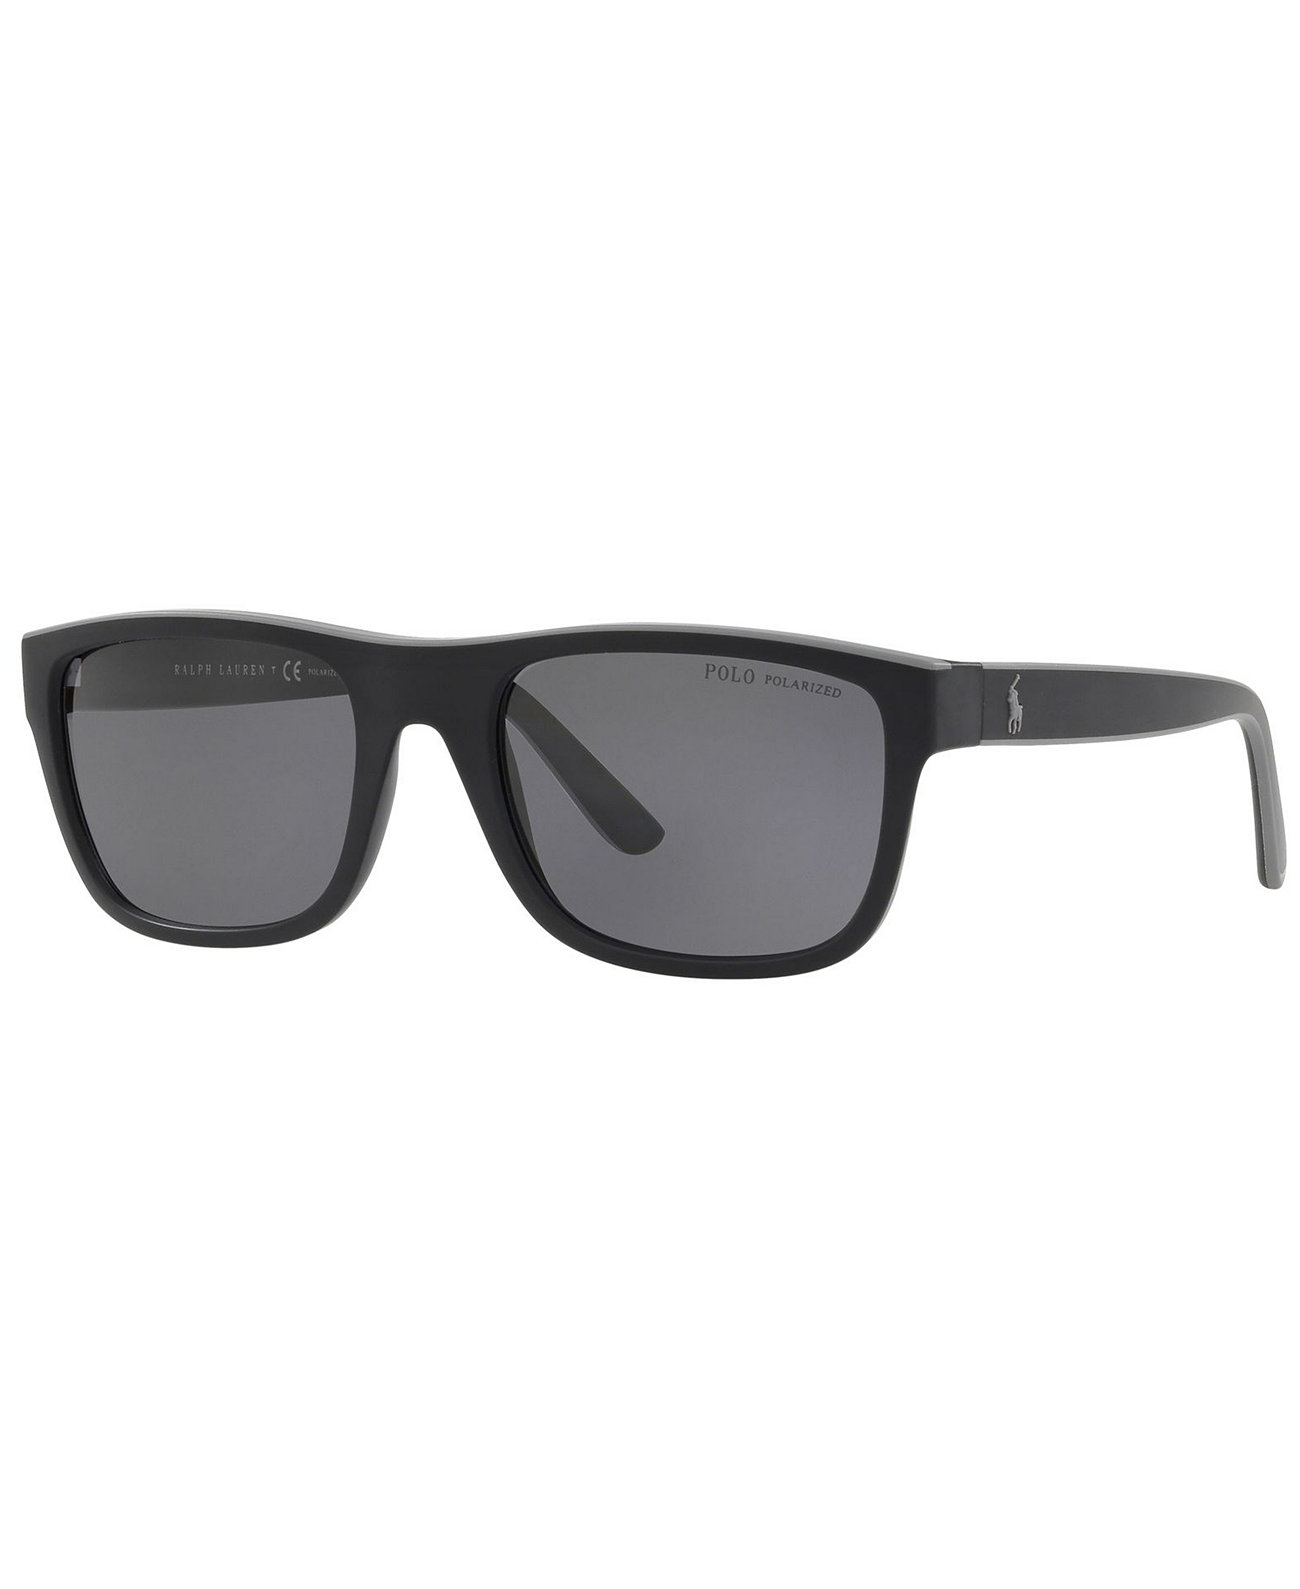 Поляризованные солнцезащитные очки, PH4145 56 Ralph Lauren